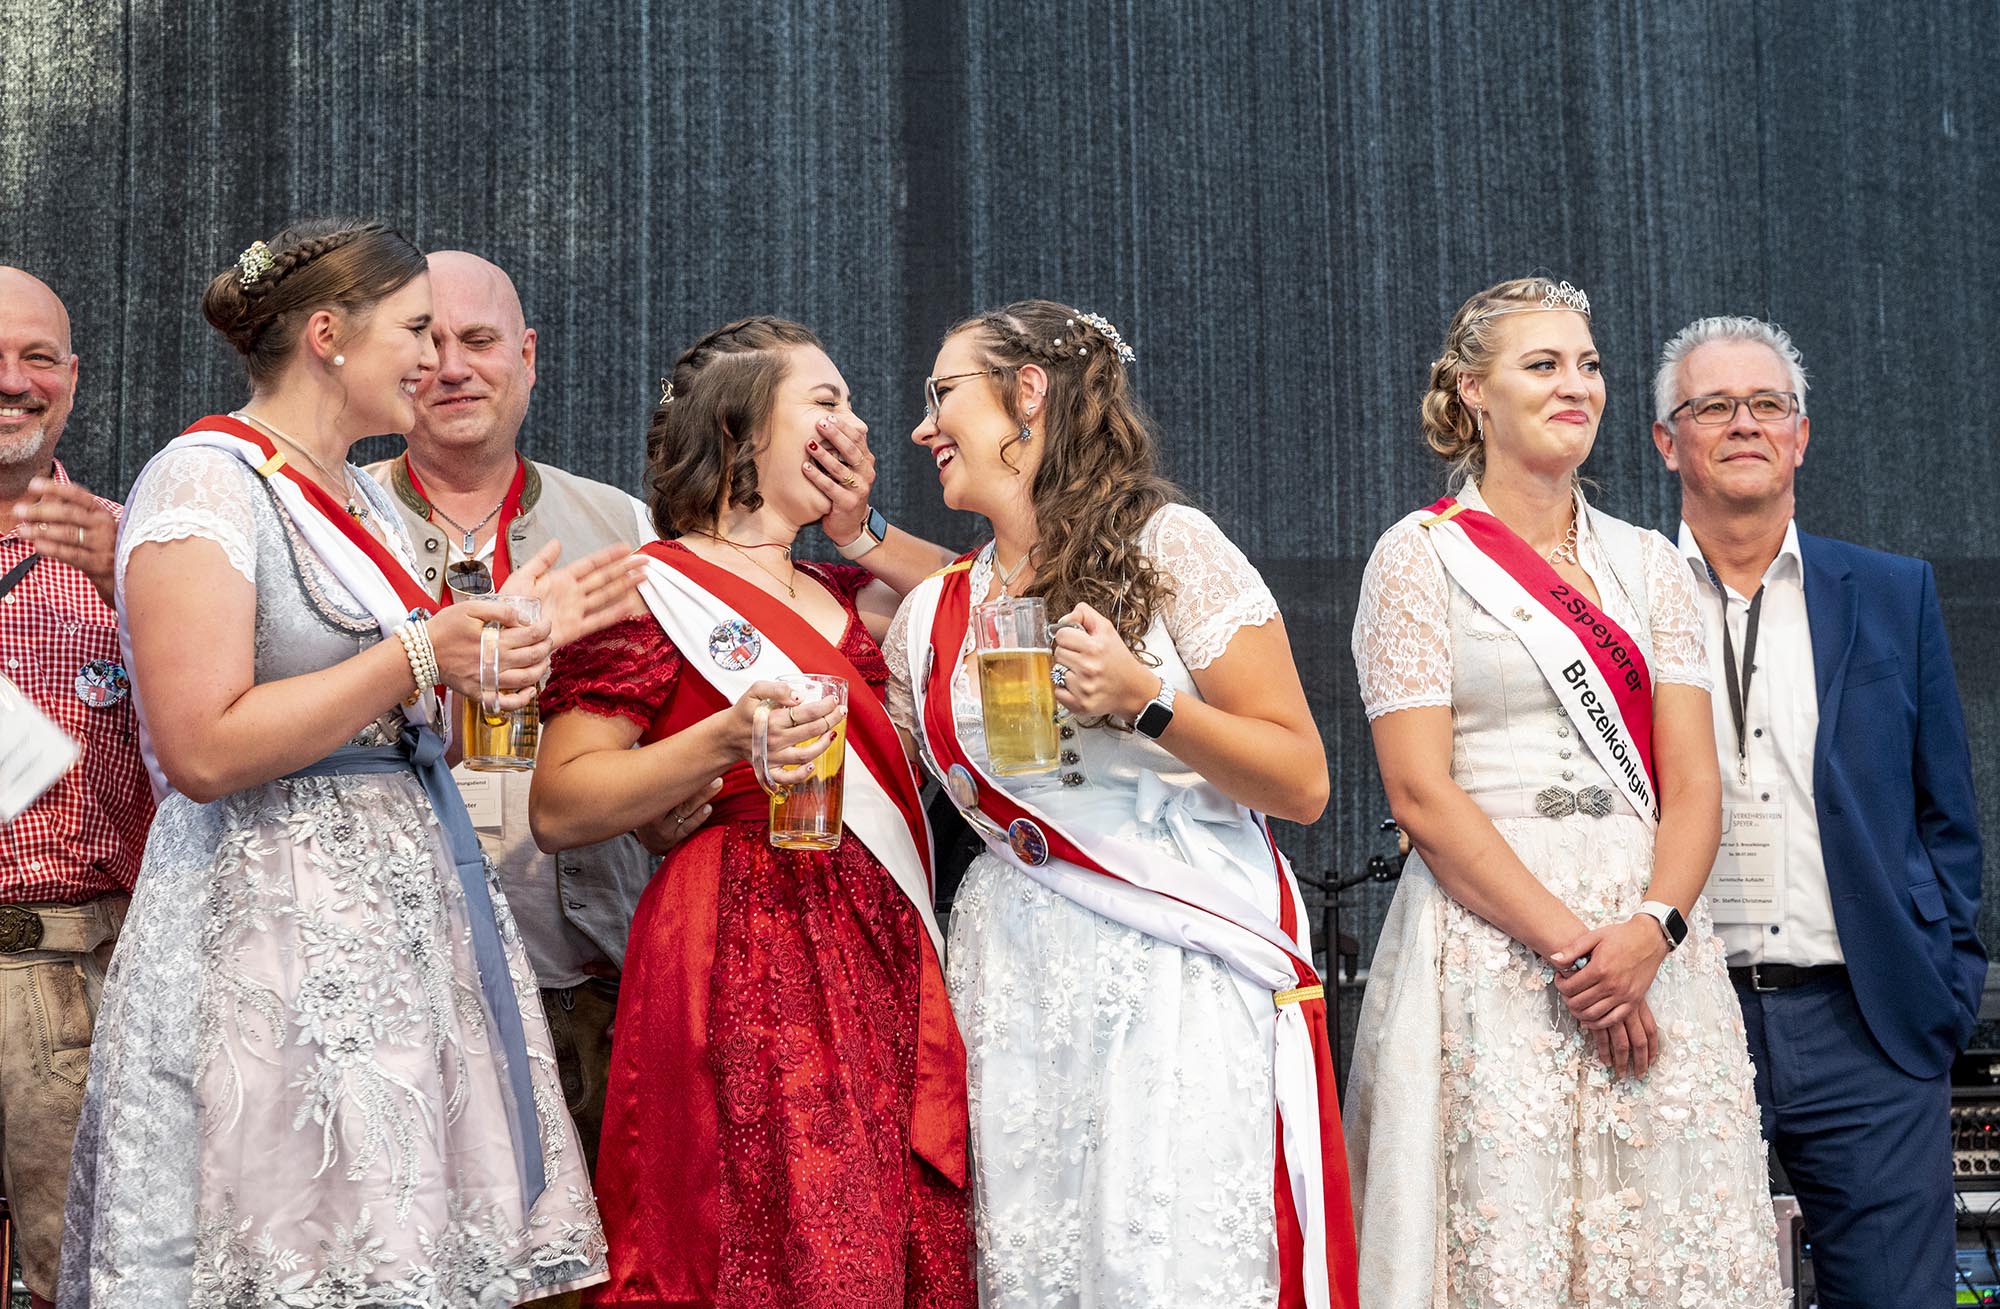 Lea Leddin im roten Kleid freut sich über die Wahl zur 3. Brzelkönigin. Außerdem dabei Katharina Hanten, Sophia Neuberger und die vorherige Königin Anne-Susann Sperling.